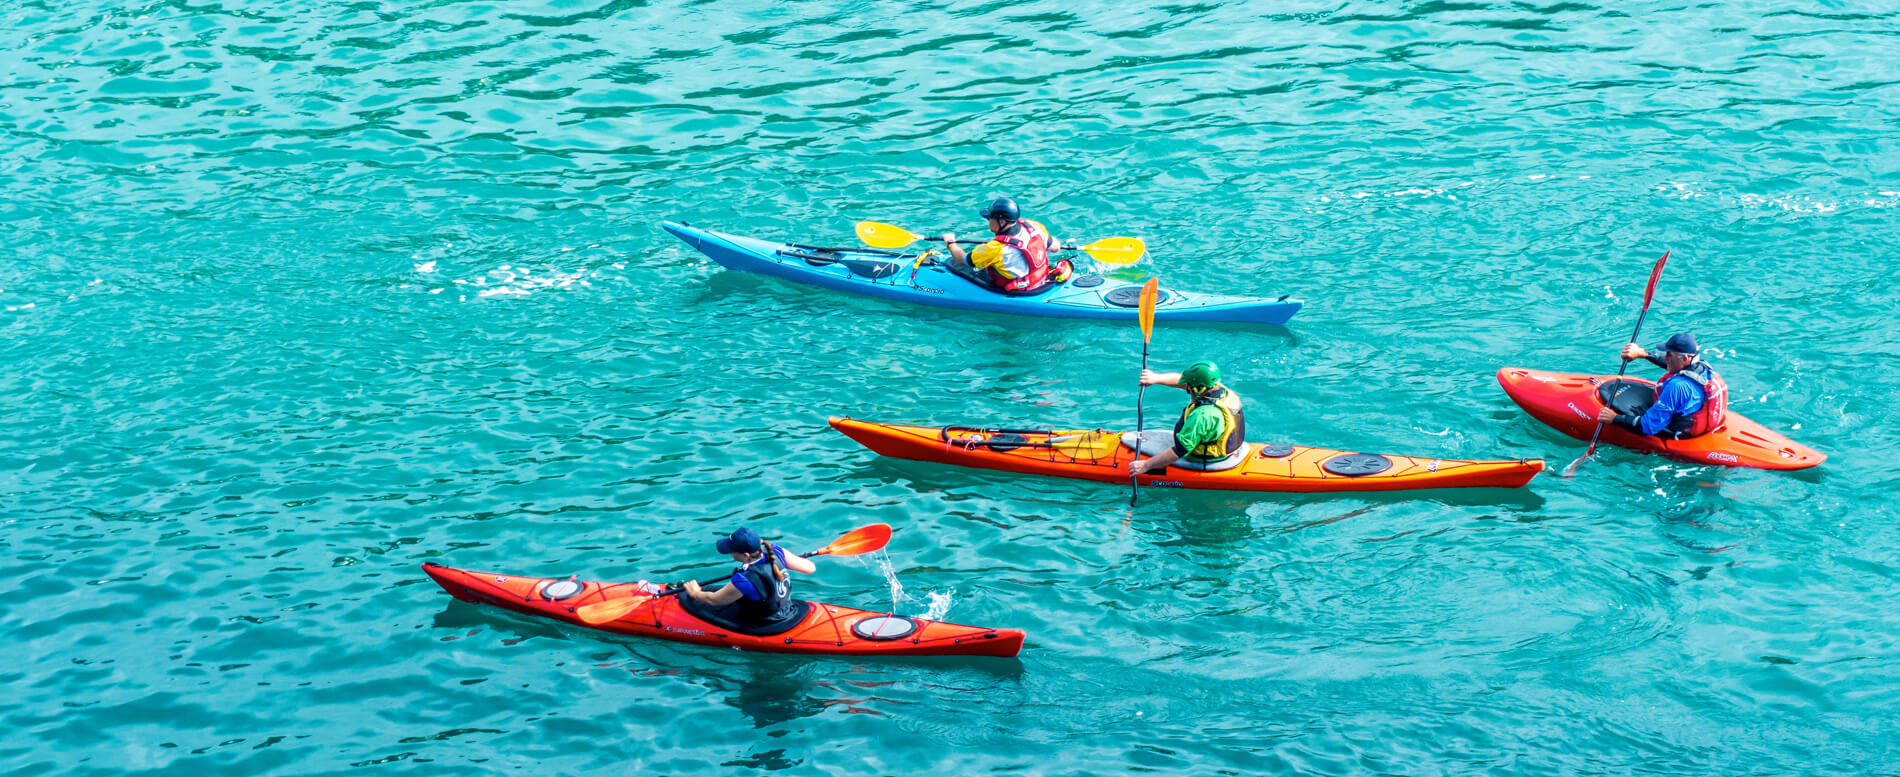 Four man kayaking using varied types of kayak